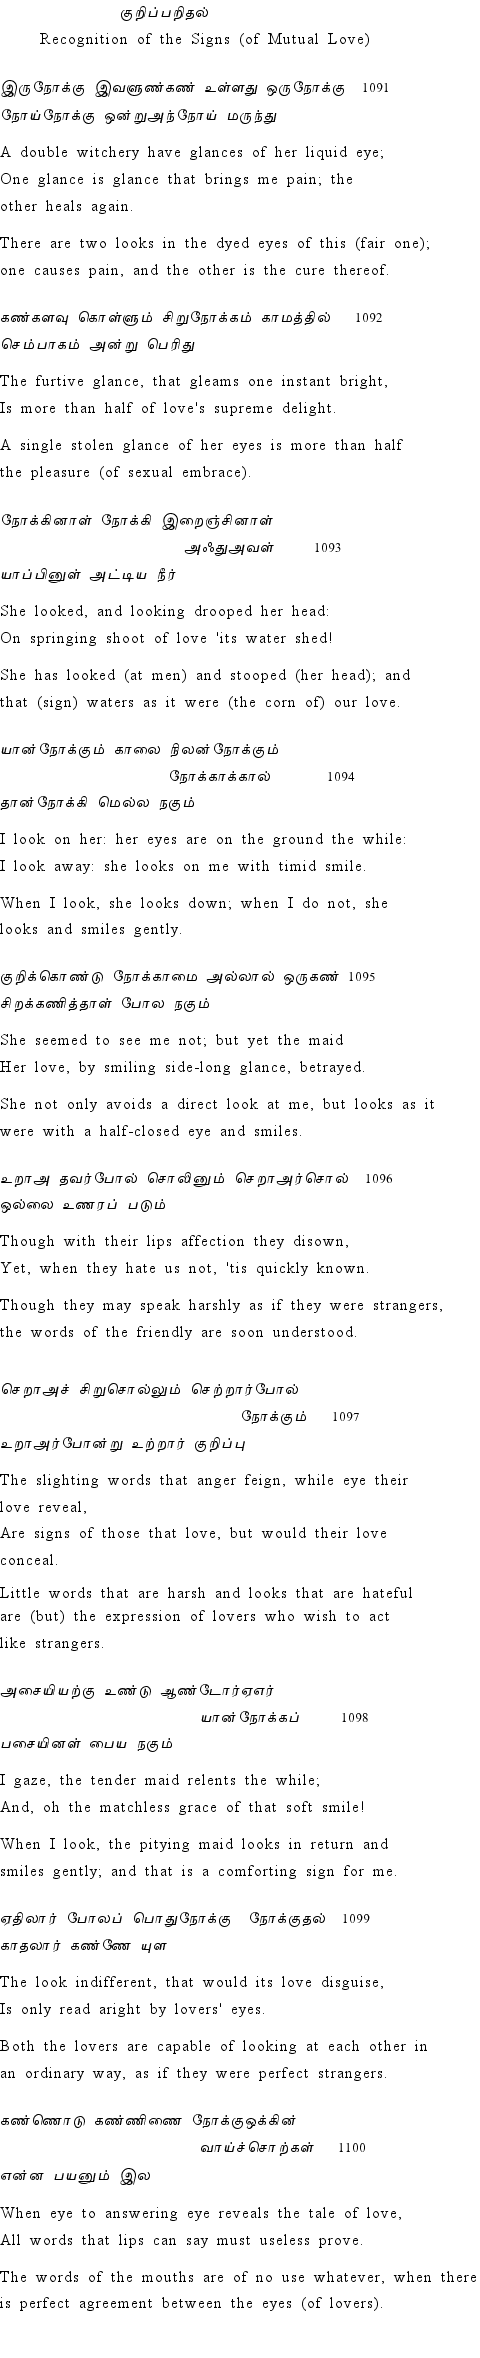 Text of Adhikaram 110